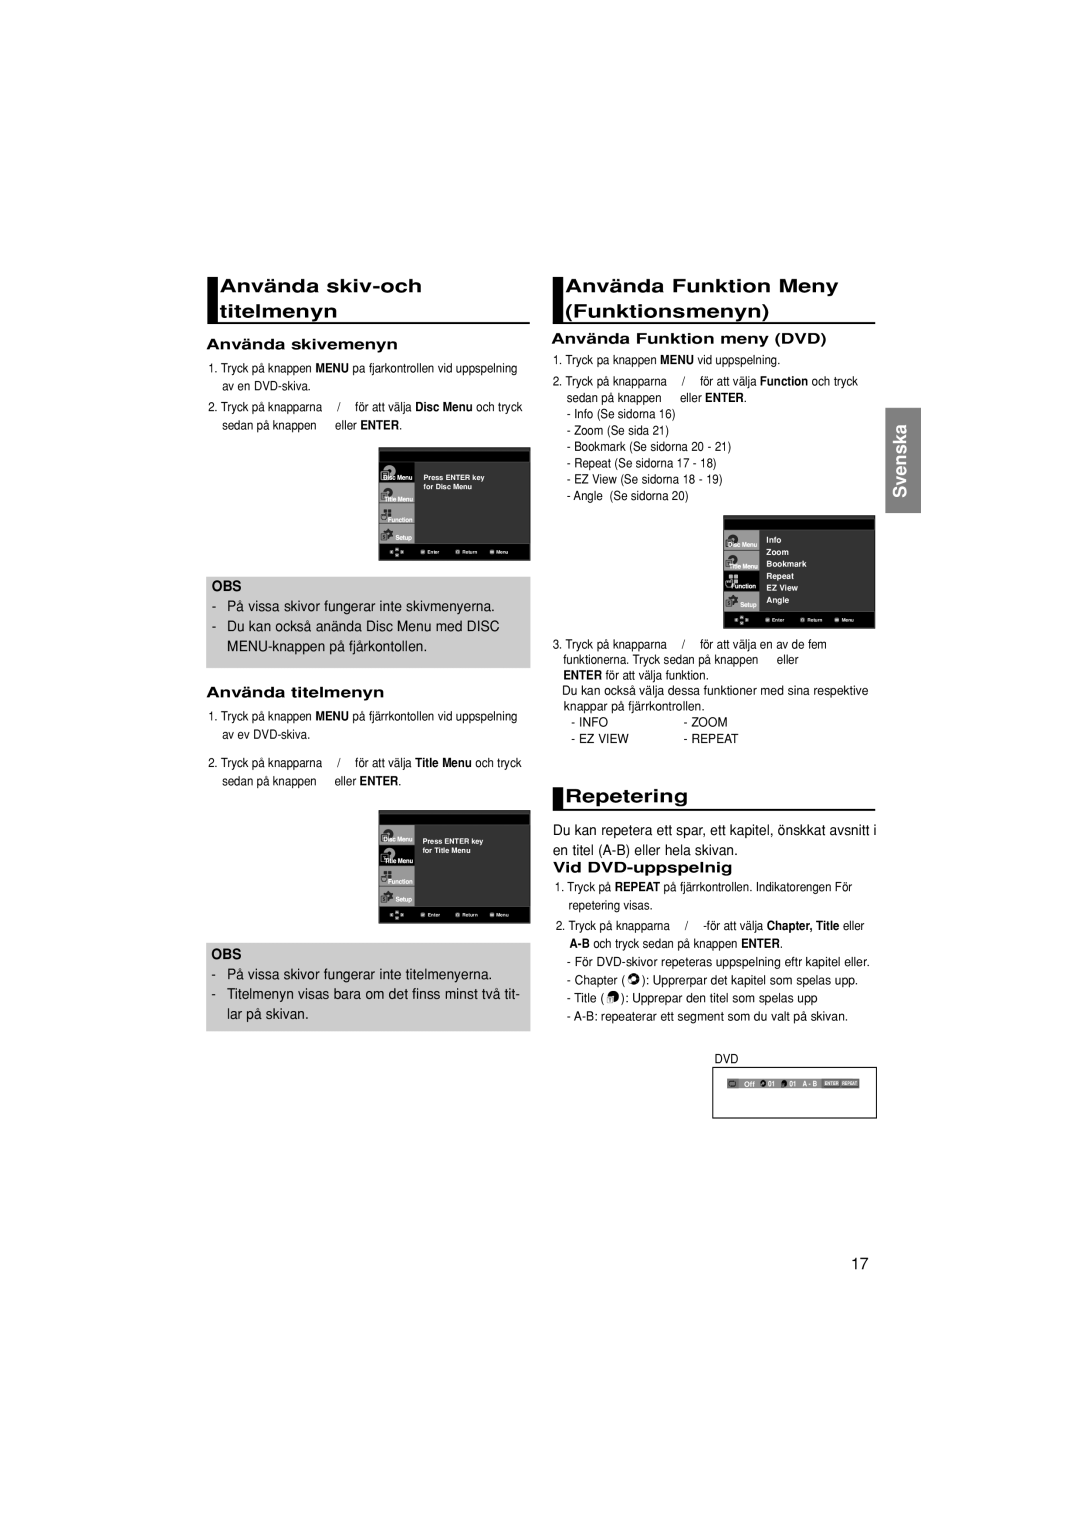 Samsung DVD-F1080/XEE, DVD-F1080W/XEE manual Använda skiv-och titelmenyn, Använda Funktion Meny Funktionsmenyn, Repetering 